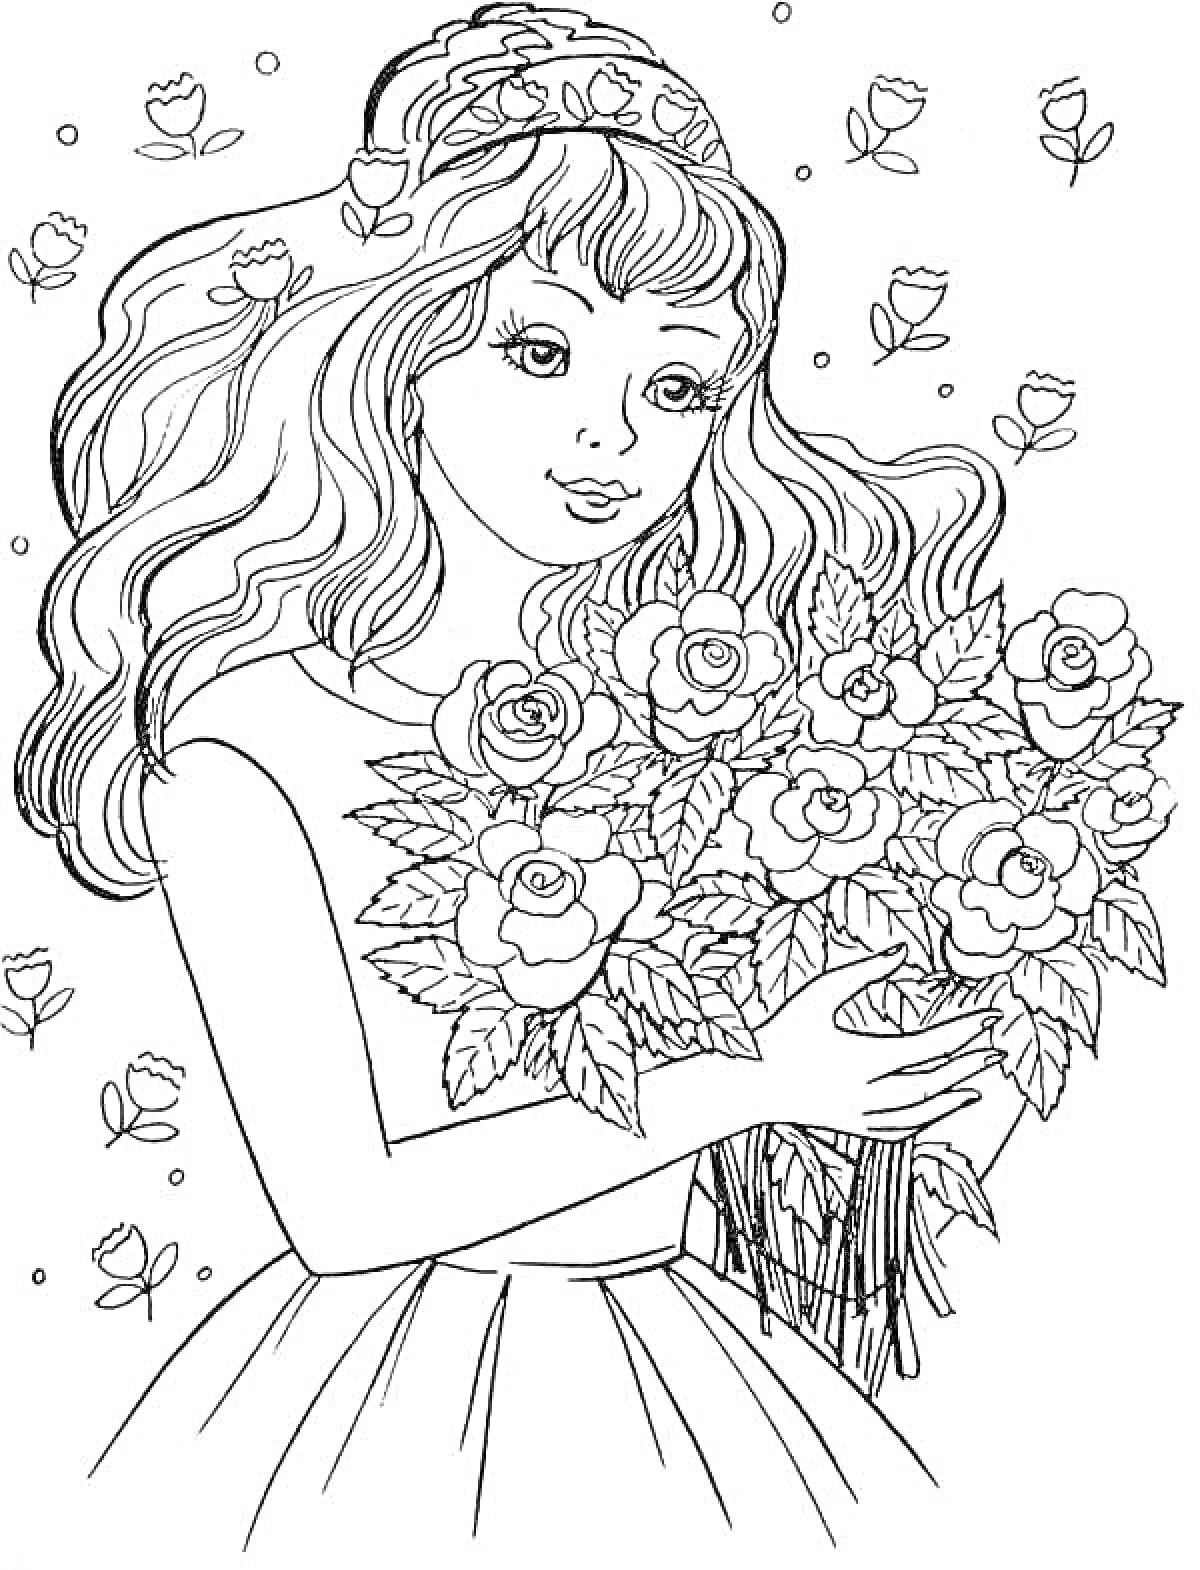 Раскраска Женщина с длинными волосами и букетом роз